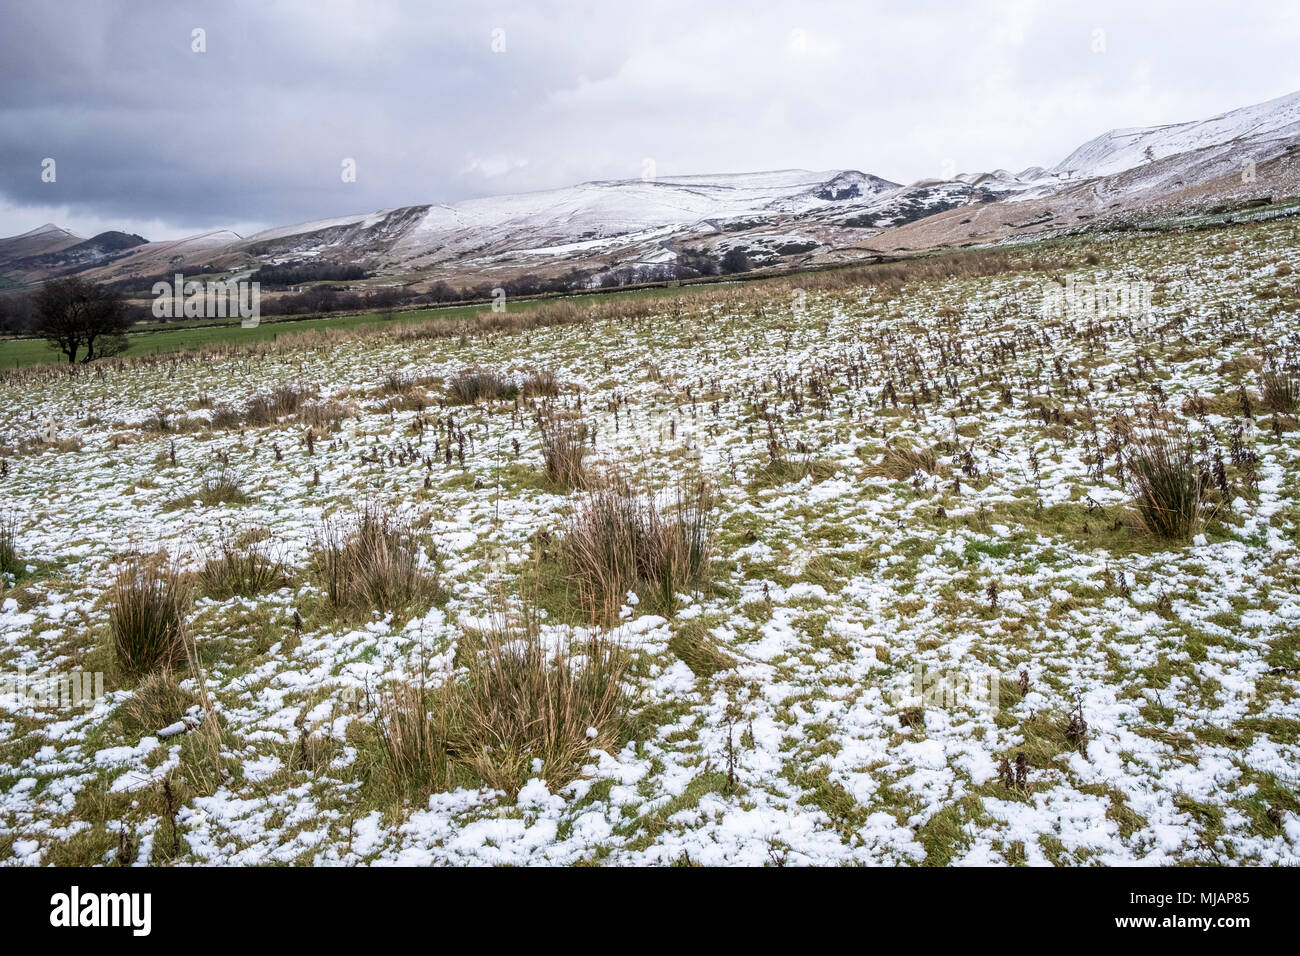 Snowy Herbst Landschaft im November. Schnee in den Feldern der Vale von Edale und auf den Hügeln des Großen Ridge, Derbyshire, Peak District, England, Großbritannien Stockfoto